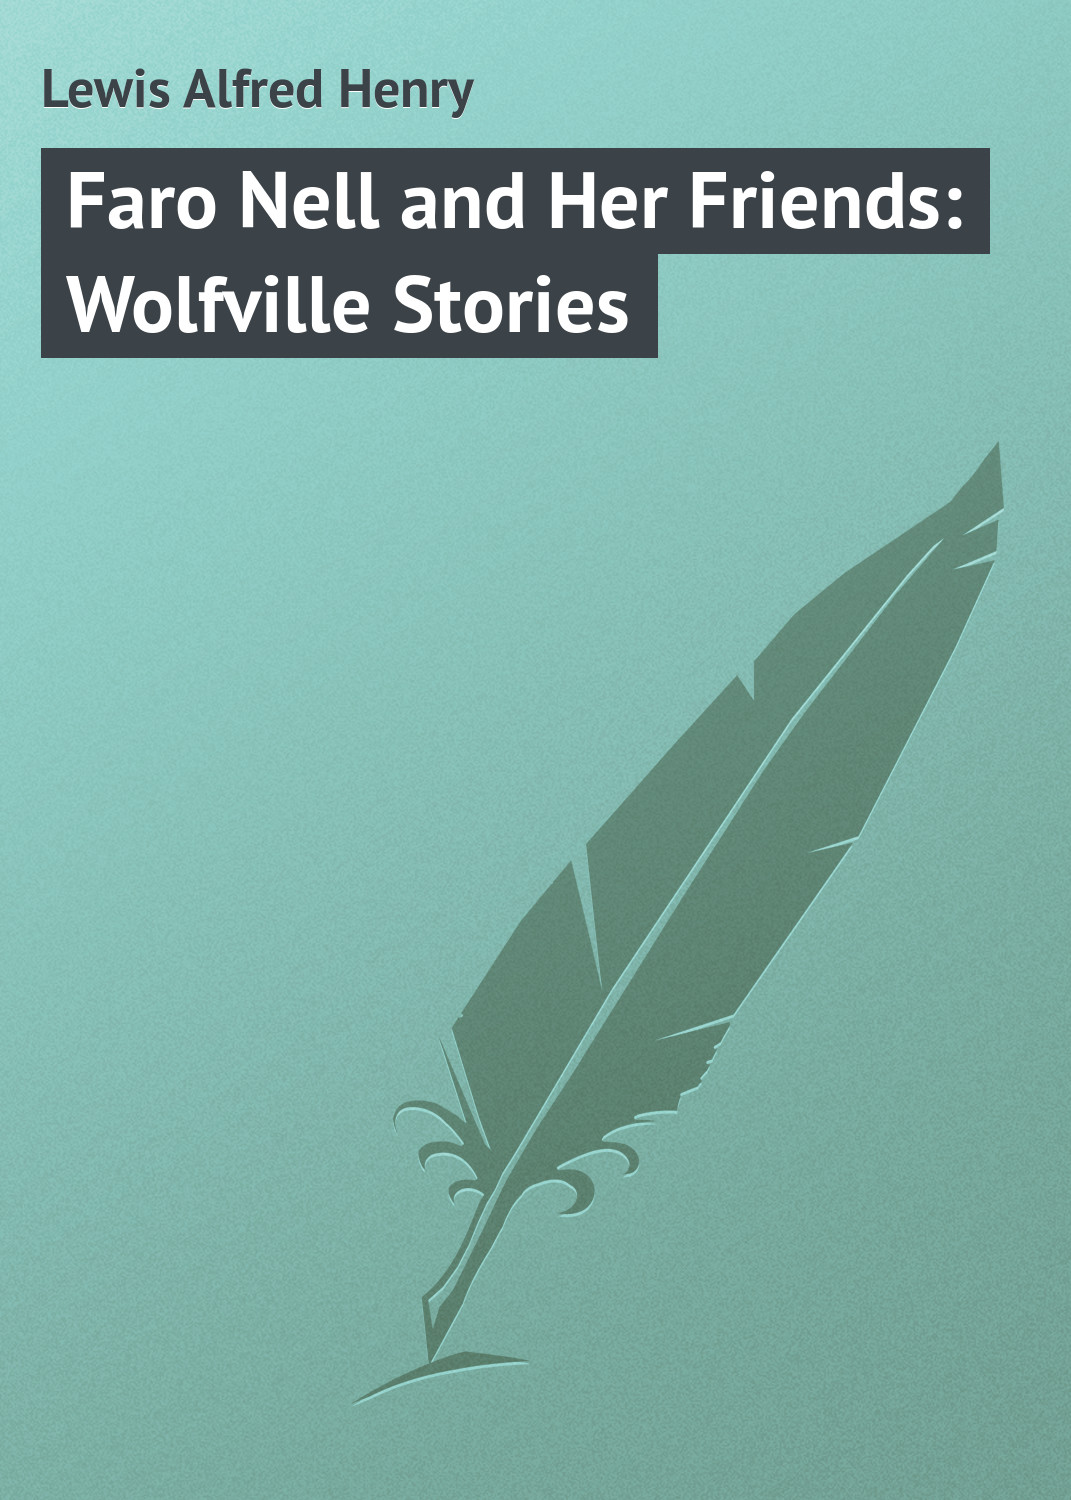 Книга Faro Nell and Her Friends: Wolfville Stories из серии , созданная Alfred Lewis, может относится к жанру Зарубежная классика, Зарубежные приключения. Стоимость электронной книги Faro Nell and Her Friends: Wolfville Stories с идентификатором 23144579 составляет 5.99 руб.